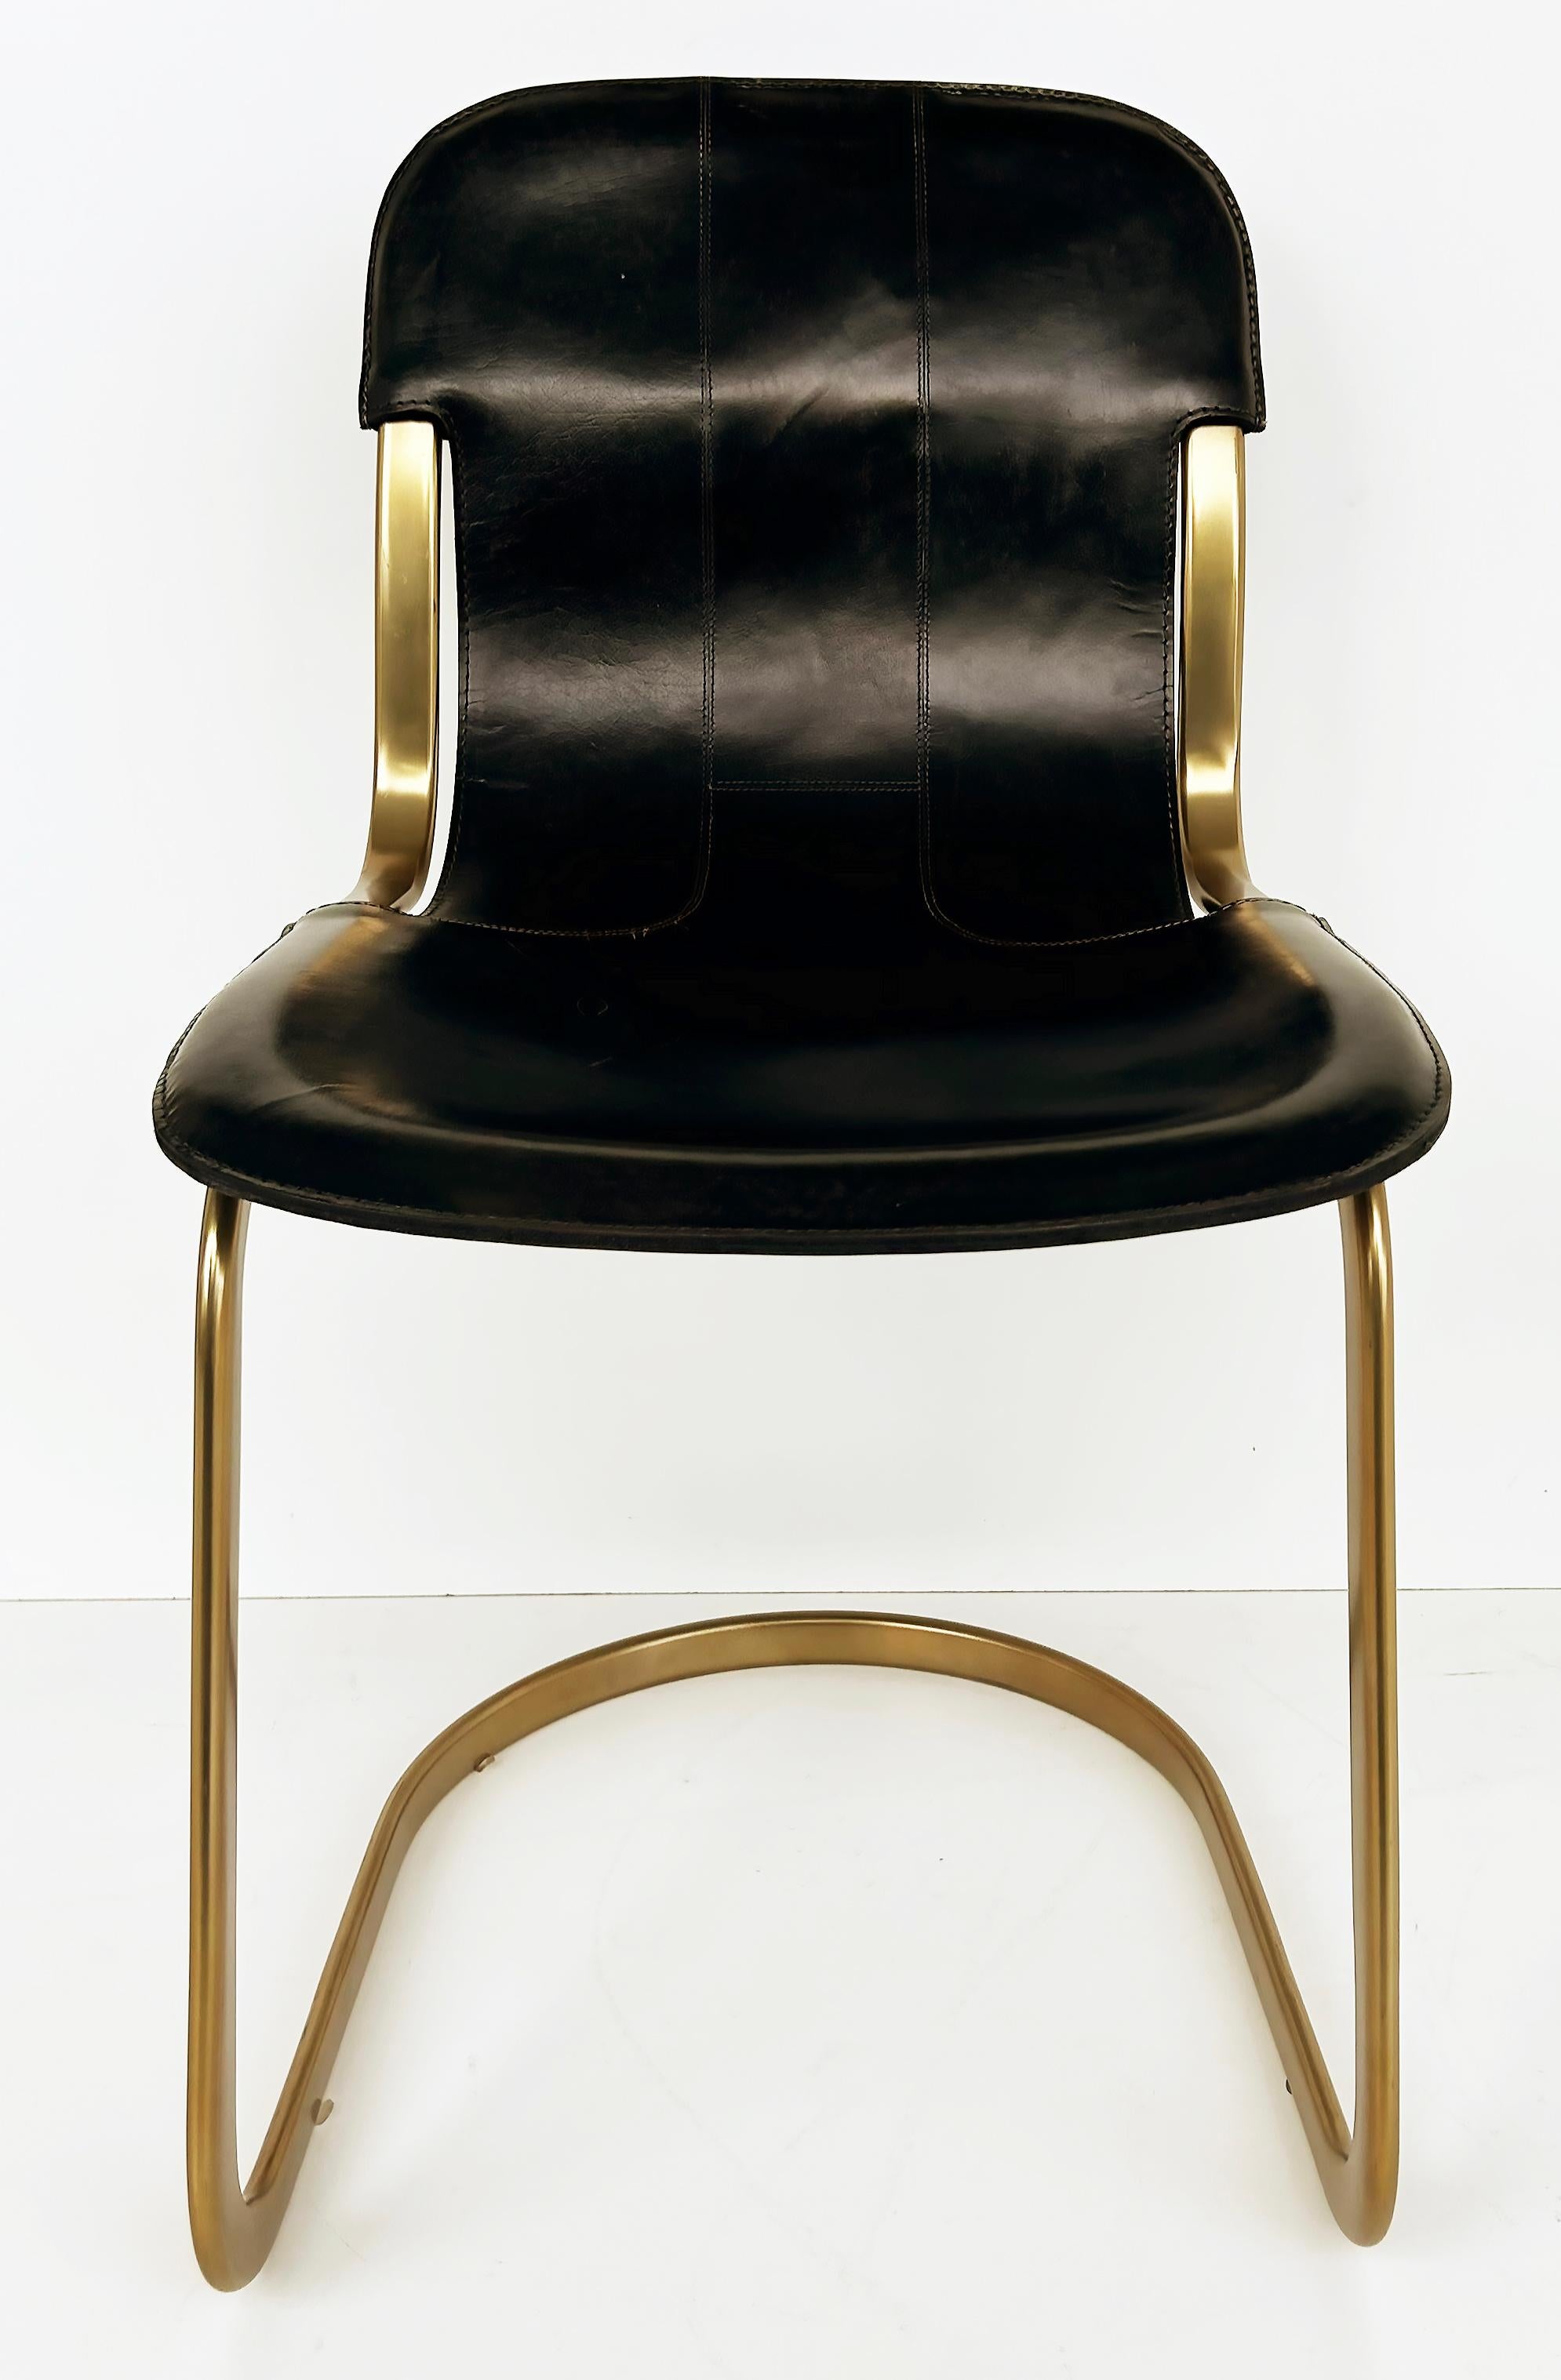 Chaises de salle à manger en porte-à-faux en cuir plaqué laiton d'après Willy Rizzo Desgn

Nous proposons à la vente un ensemble de six chaises de salle à manger en porte-à-faux, plaquées laiton et en cuir cousu, d'après un design moderne du milieu